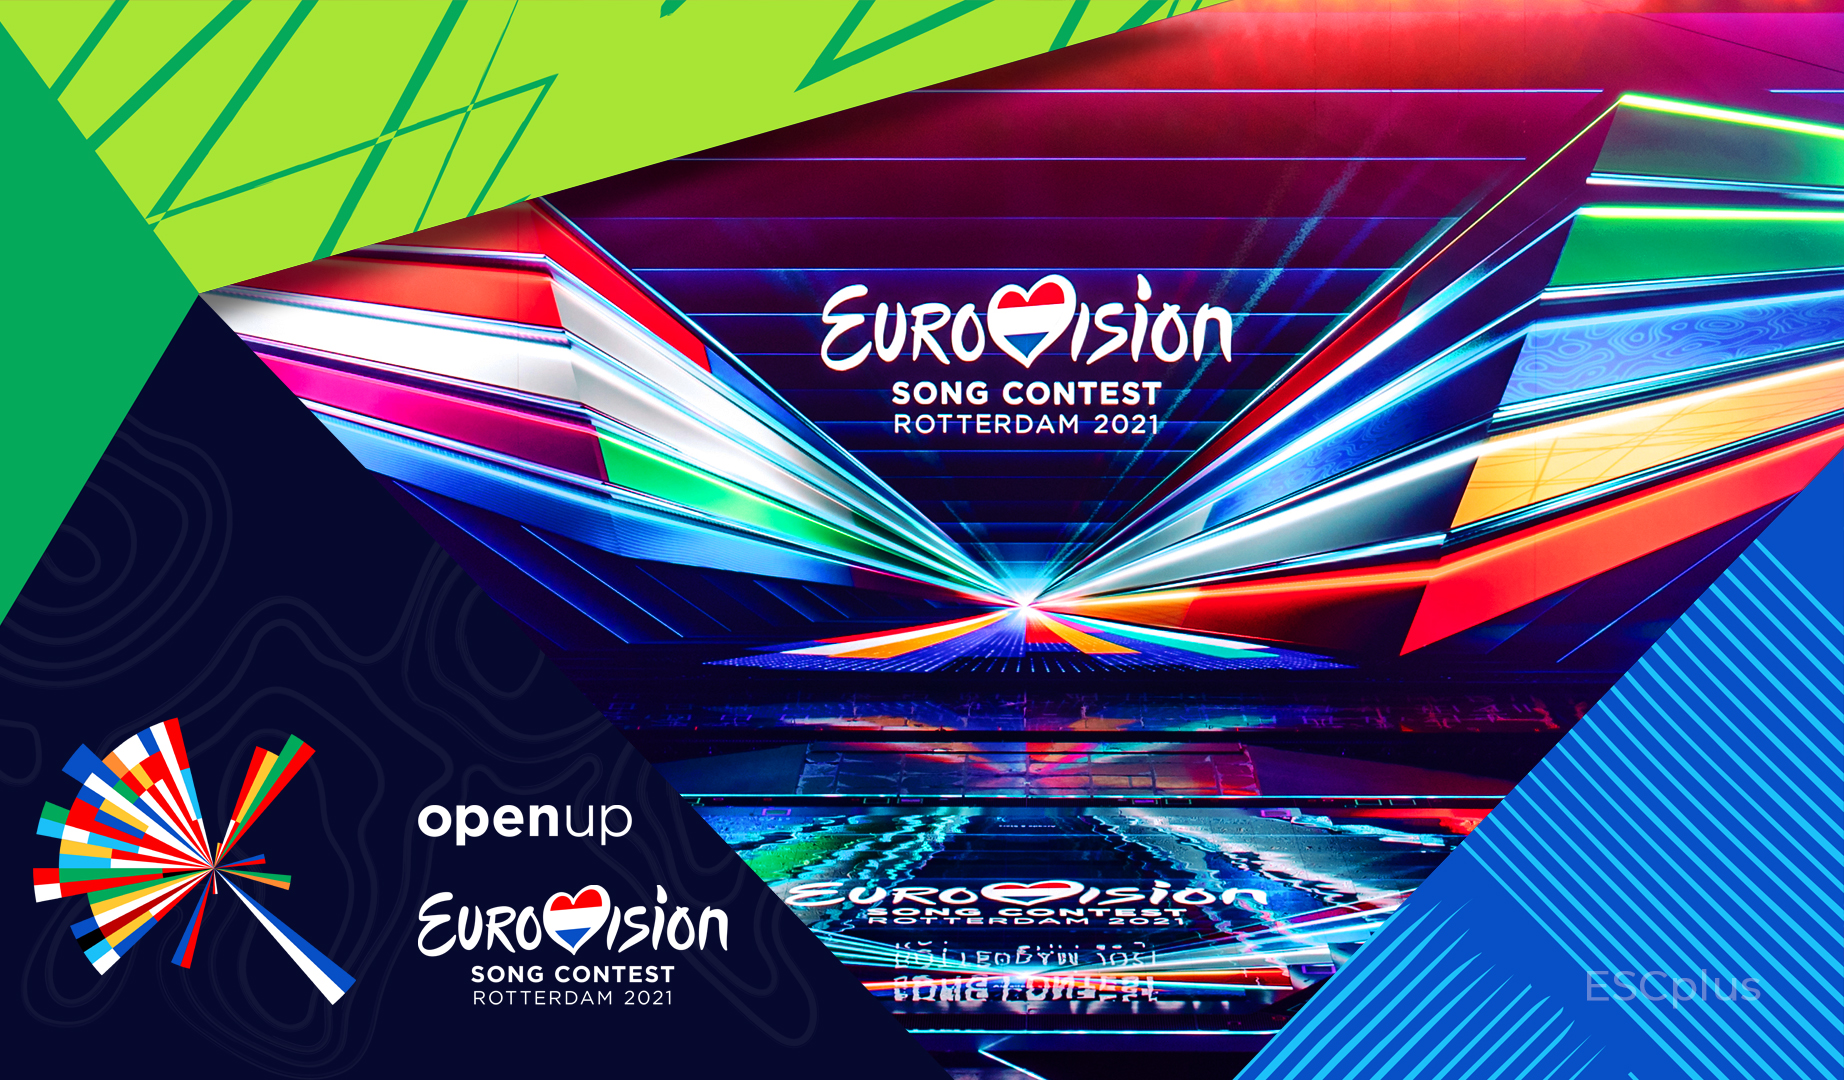 ¡Después de 2 años volveremos a disfrutar de una semifinal de Eurovisión! Esta noche la primera de 2021